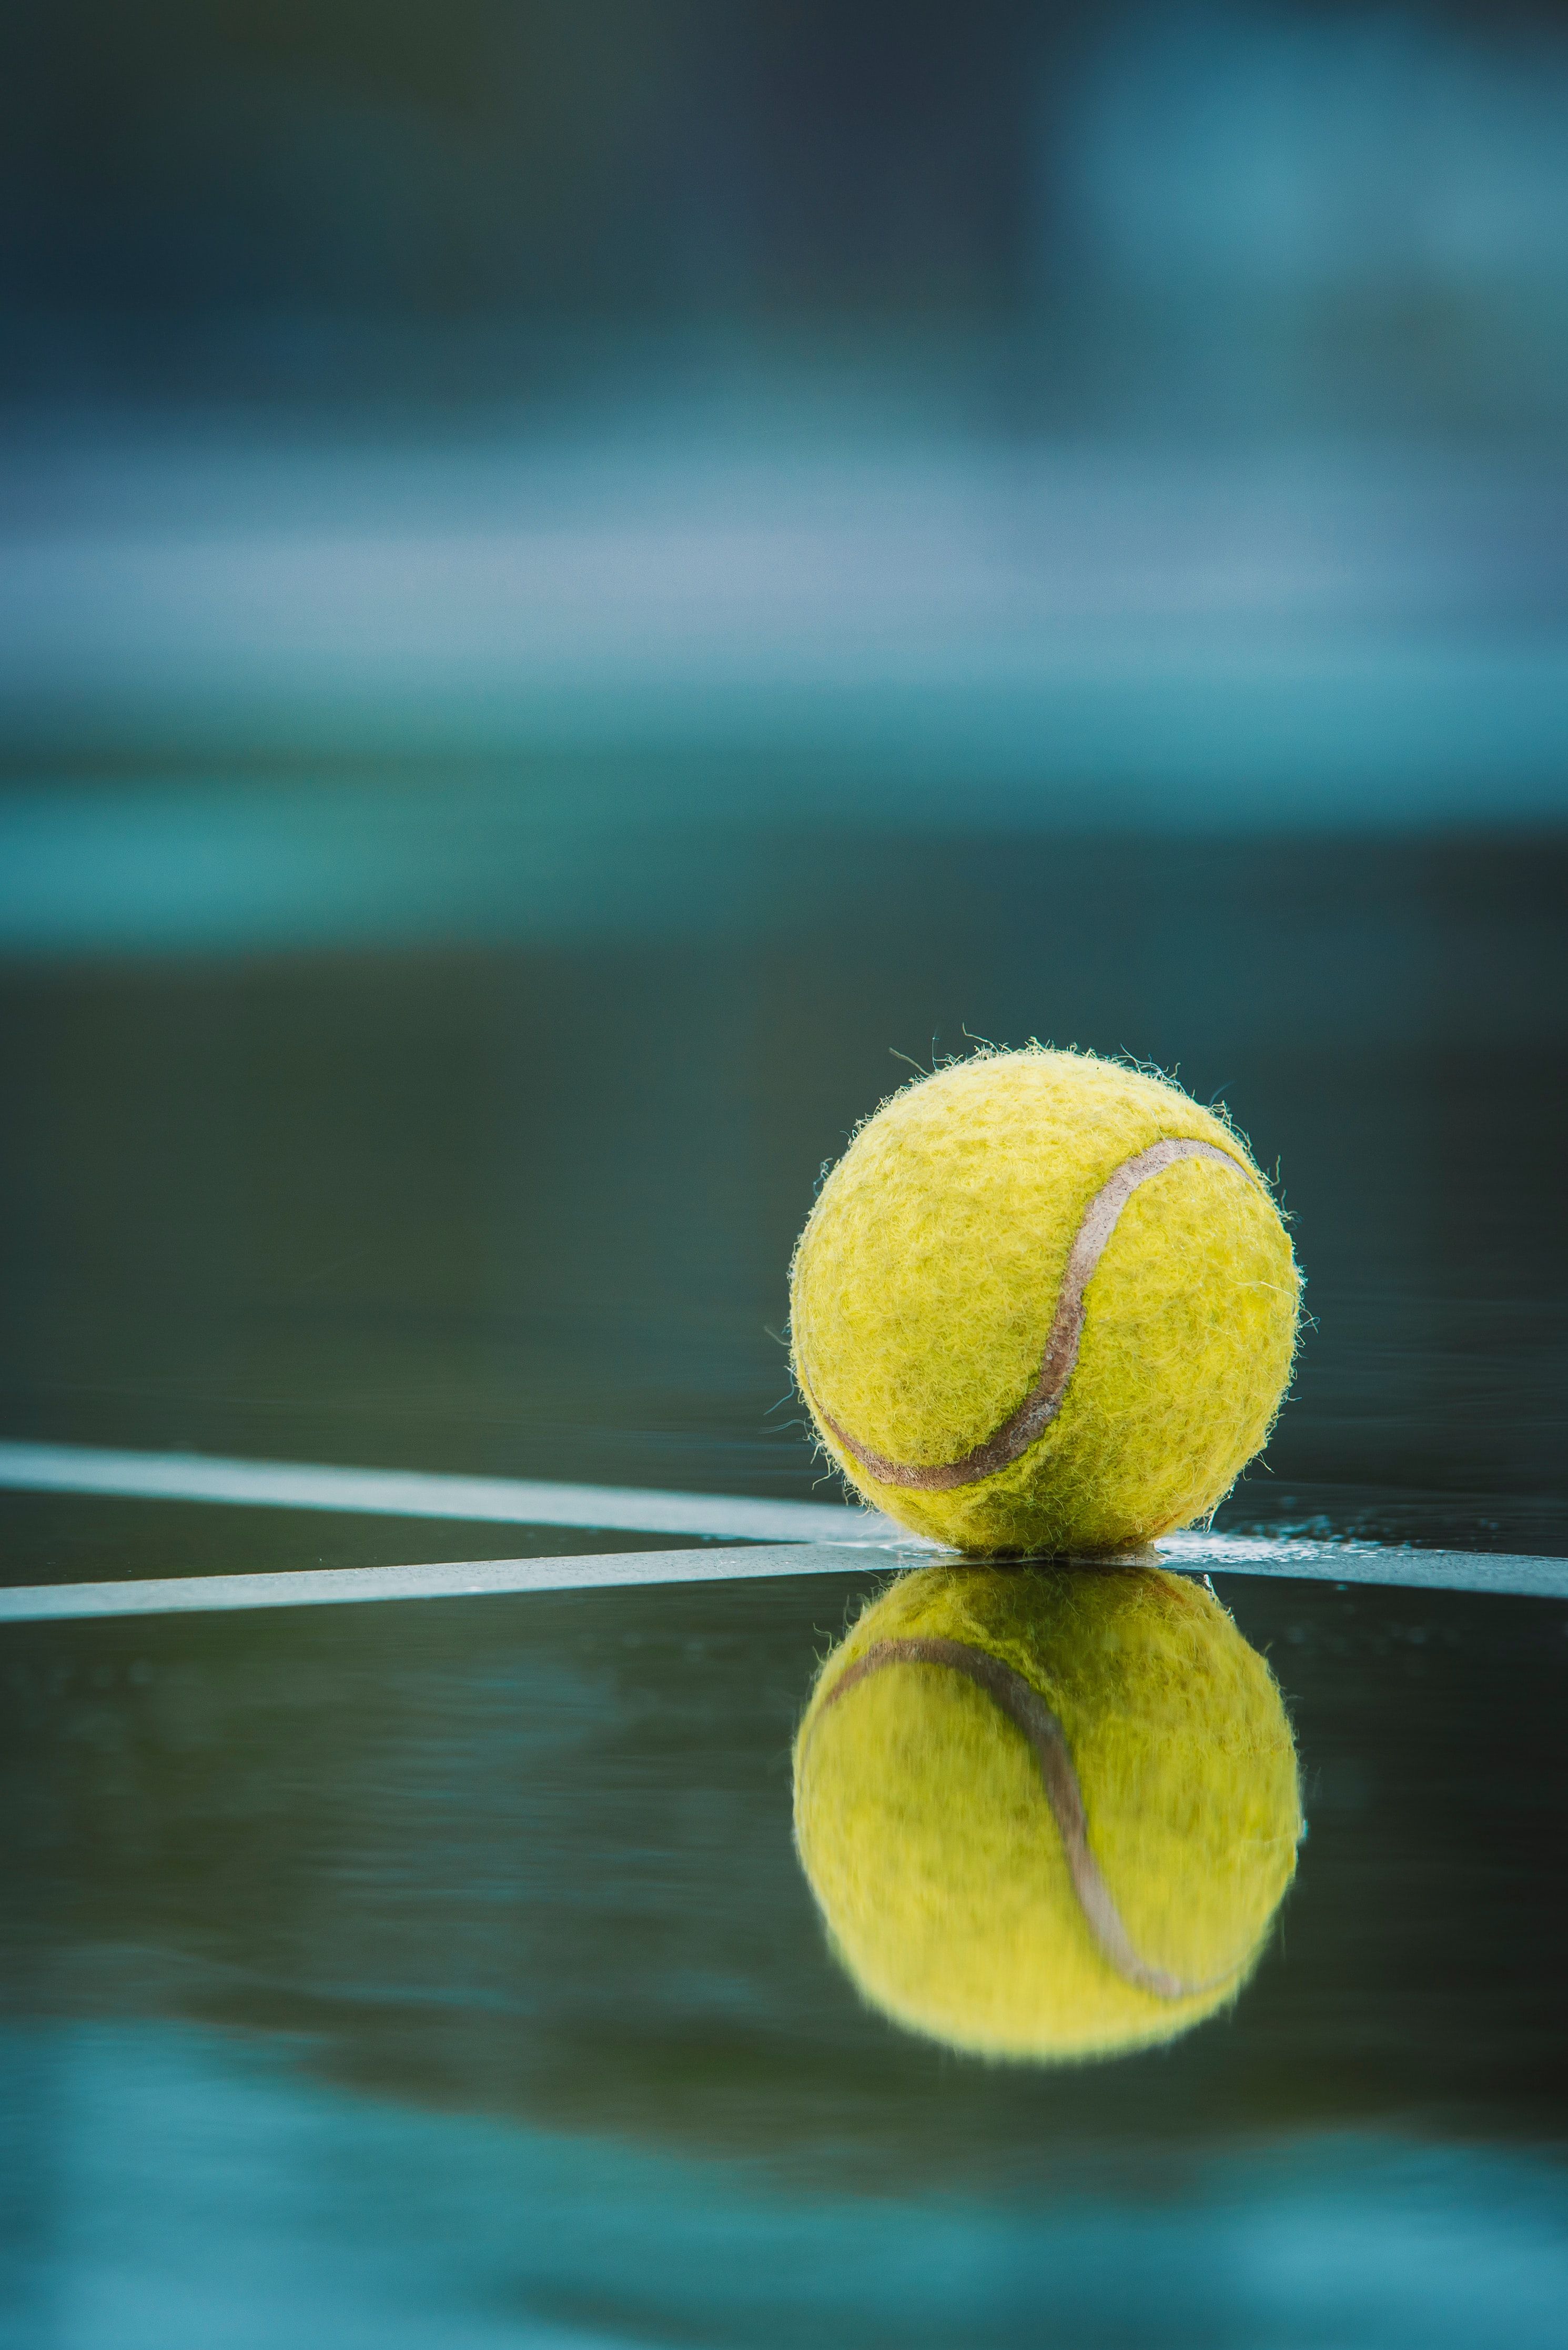 Tennis Ball. Tennis picture, Tennis ball, Tennis wallpaper